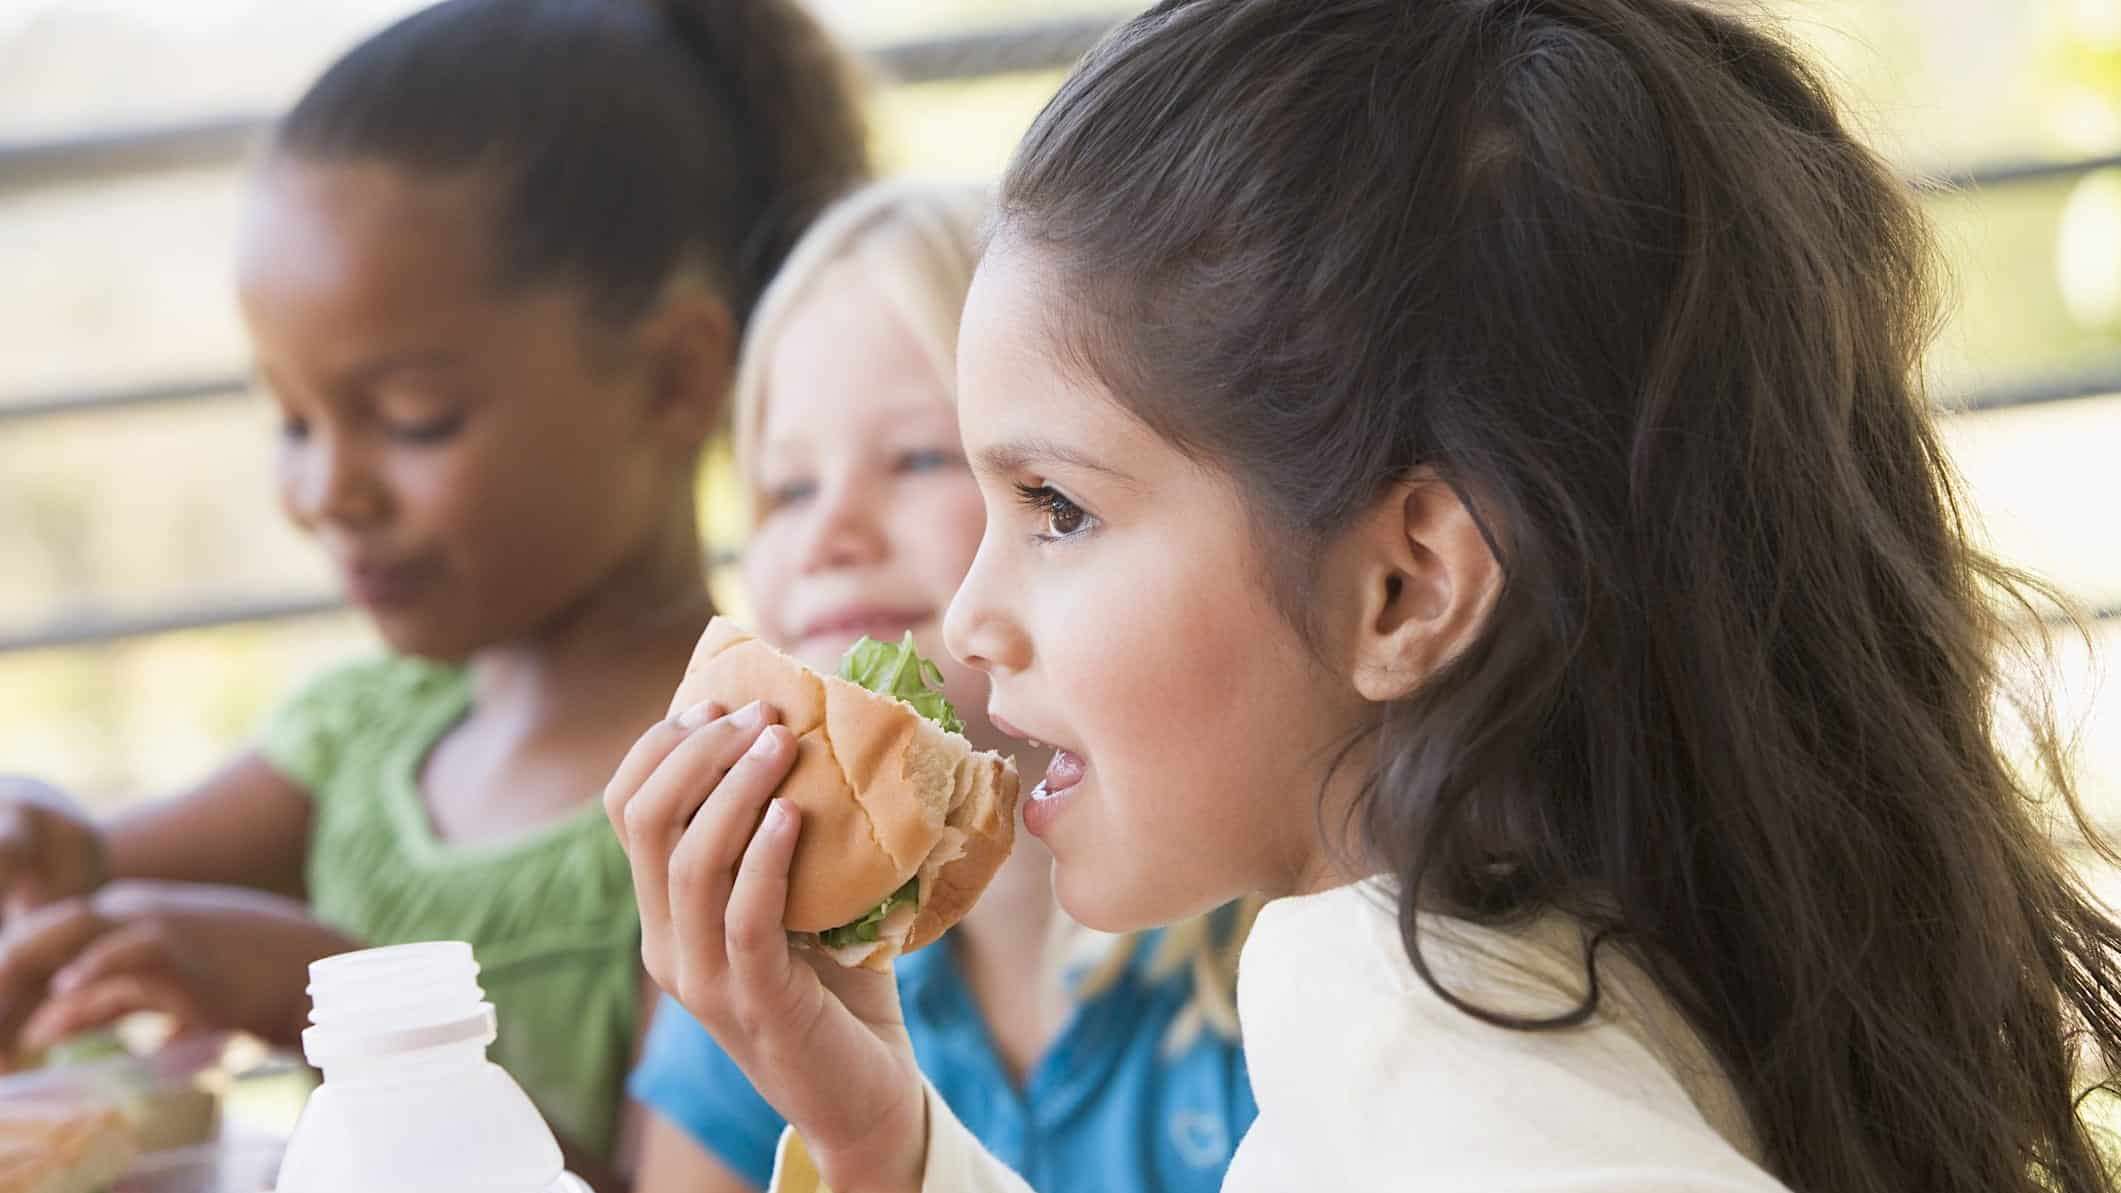 Des enfants mangent des lunchs froids sans charcuteries industrielles